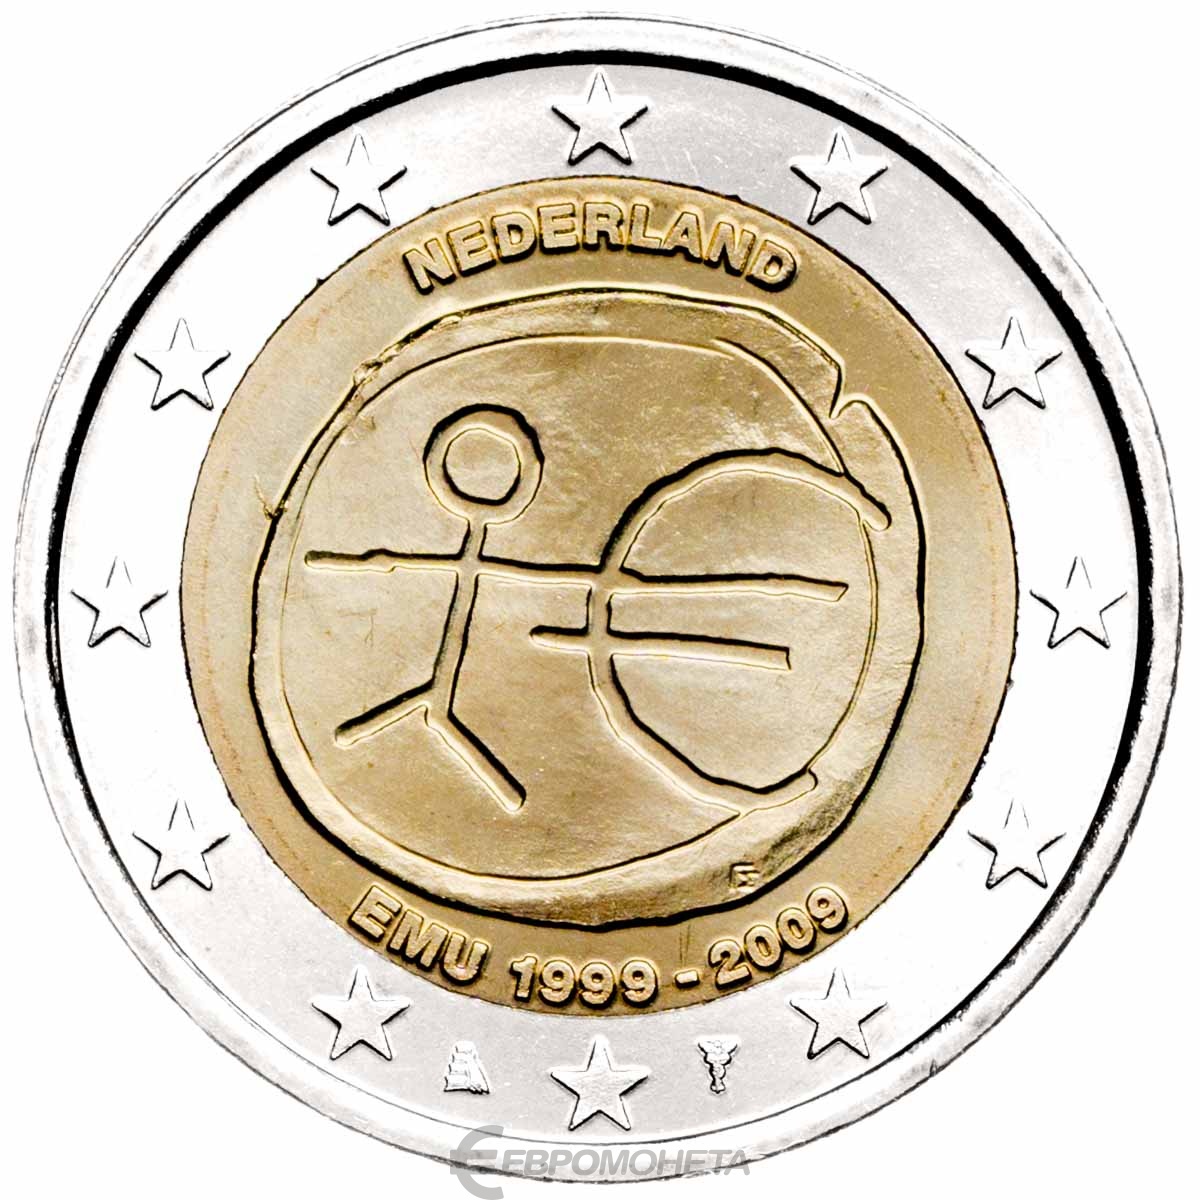 Памятные монеты евро. Монета Нидерланды 2 евро 1999 - 2009. Нидерланды 2 евро 2009. Монеты евро Голландия. Евро монеты Нидерланды юбилейные.